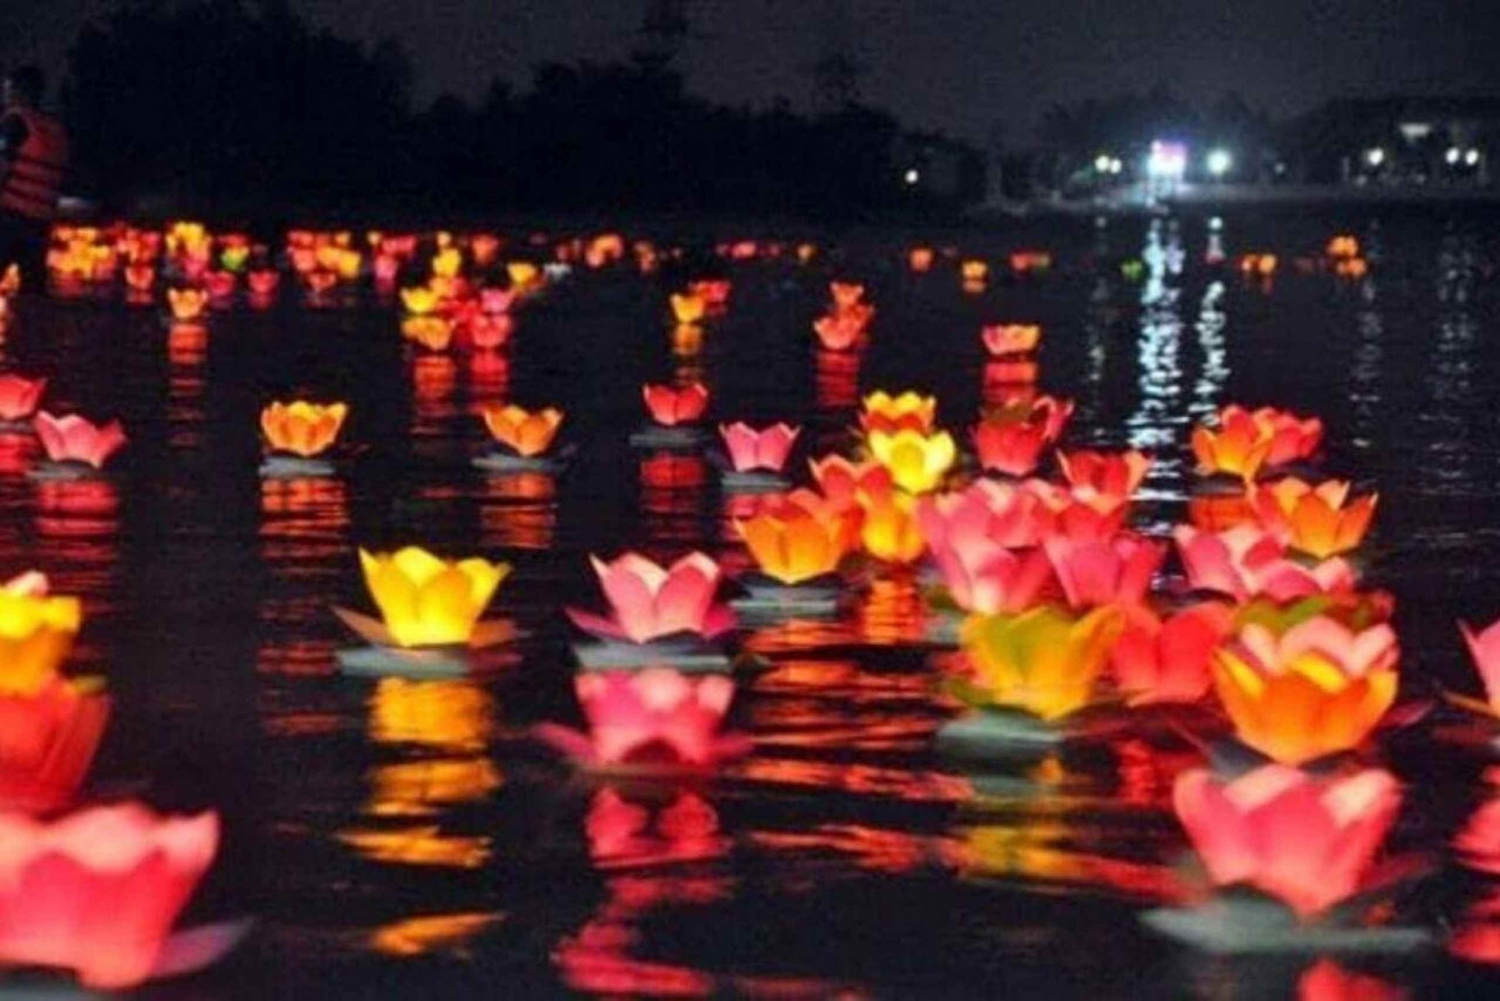 Båttur i Hoai-elven med slipp av lykt i Hoi An om natten